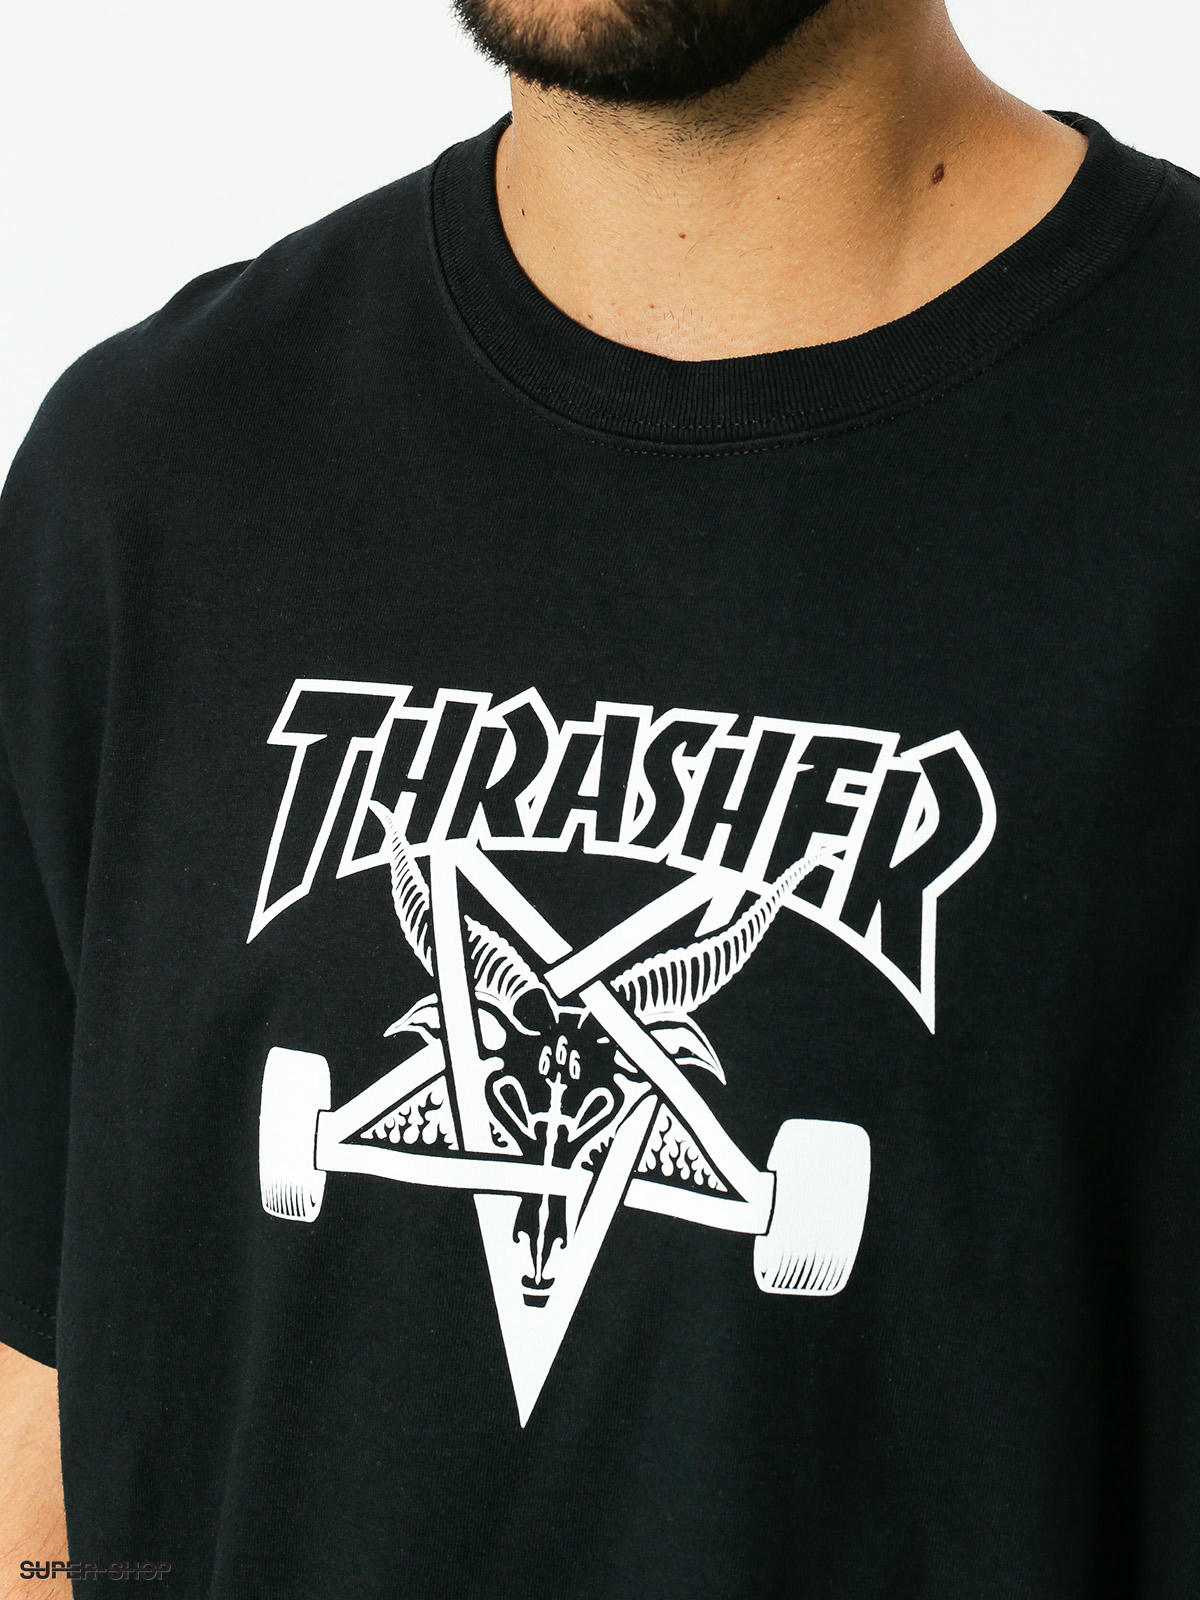 Classic Skate Tee Black or White THRASHER  Skate Goat  Skateboard Tee Shirt 